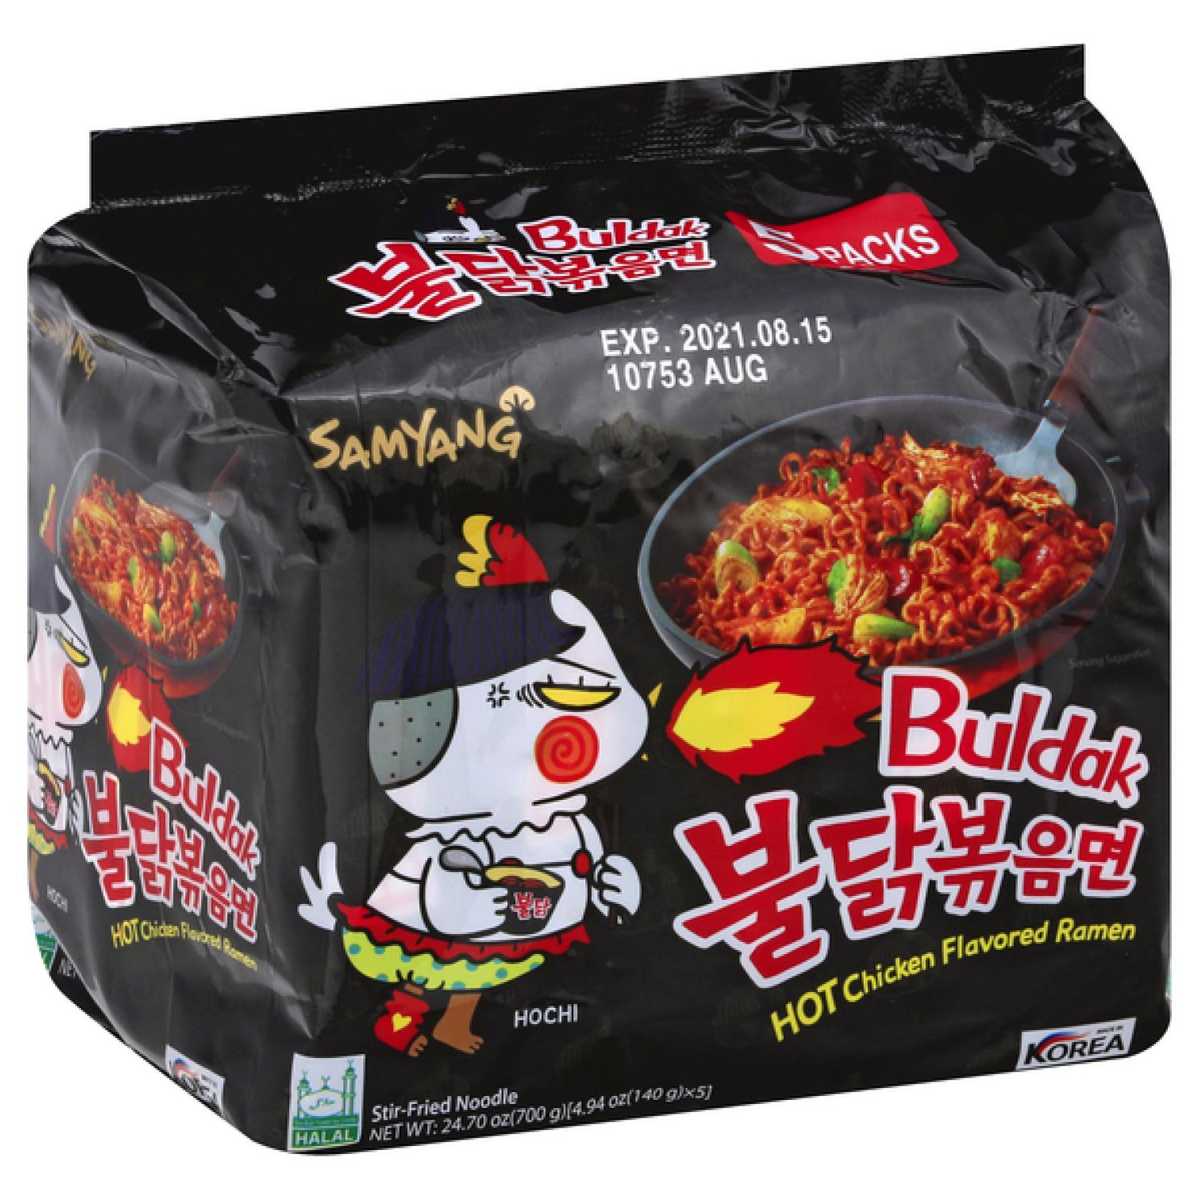 Samyang Buldak Ramen Spicy Chicken Flavored - 5 ct